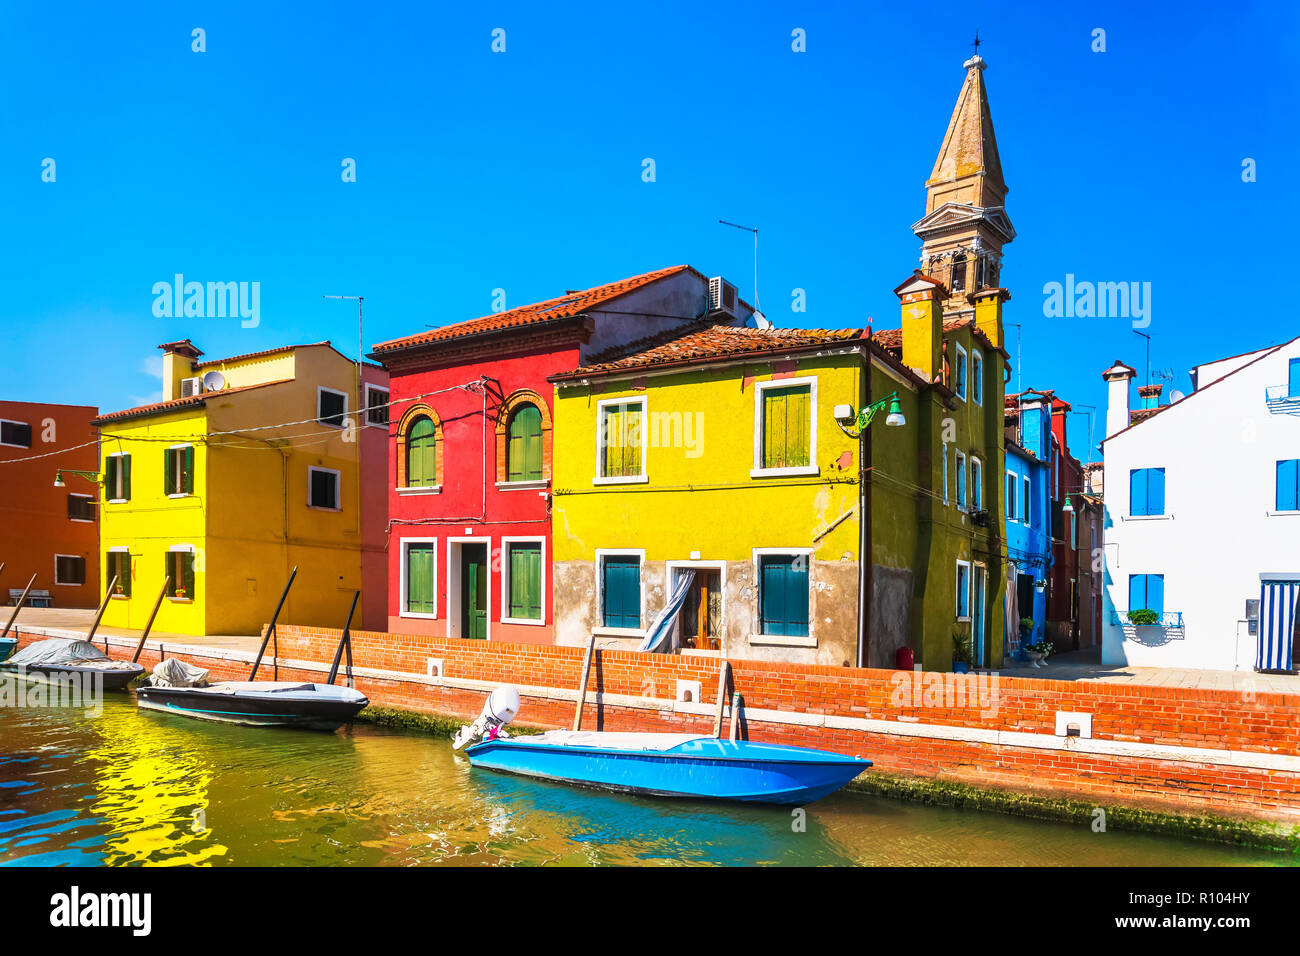 Wahrzeichen von Venedig, Burano Insel Kanal, bunte Häuser und Boote, Italien. Stockfoto